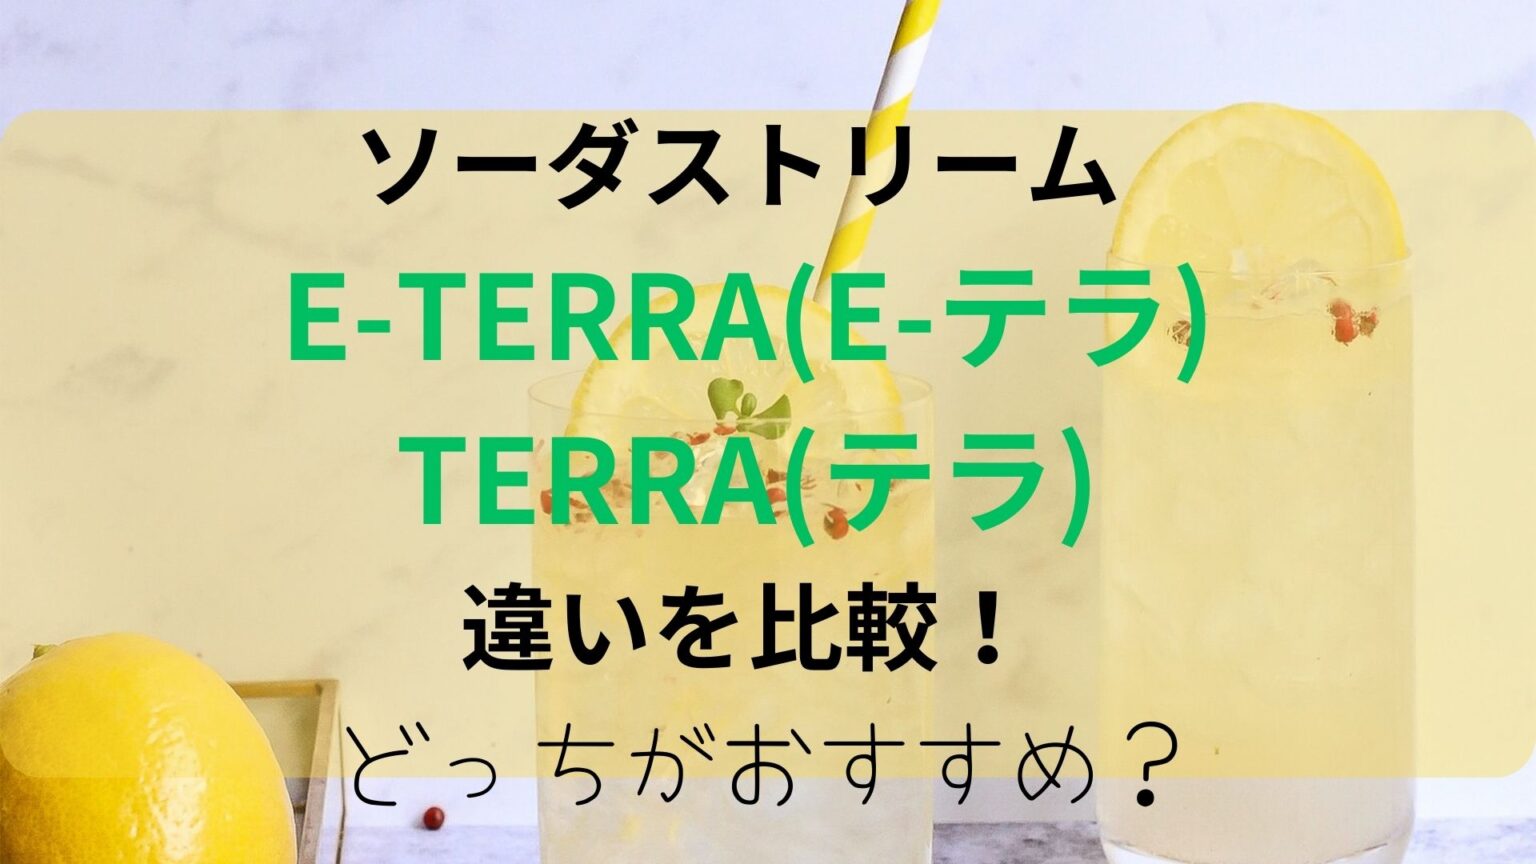 E-TERRA(E-テラ)とTERRA(テラ)の違いを比較！どっちがおすすめ？のアイキャッチ画像